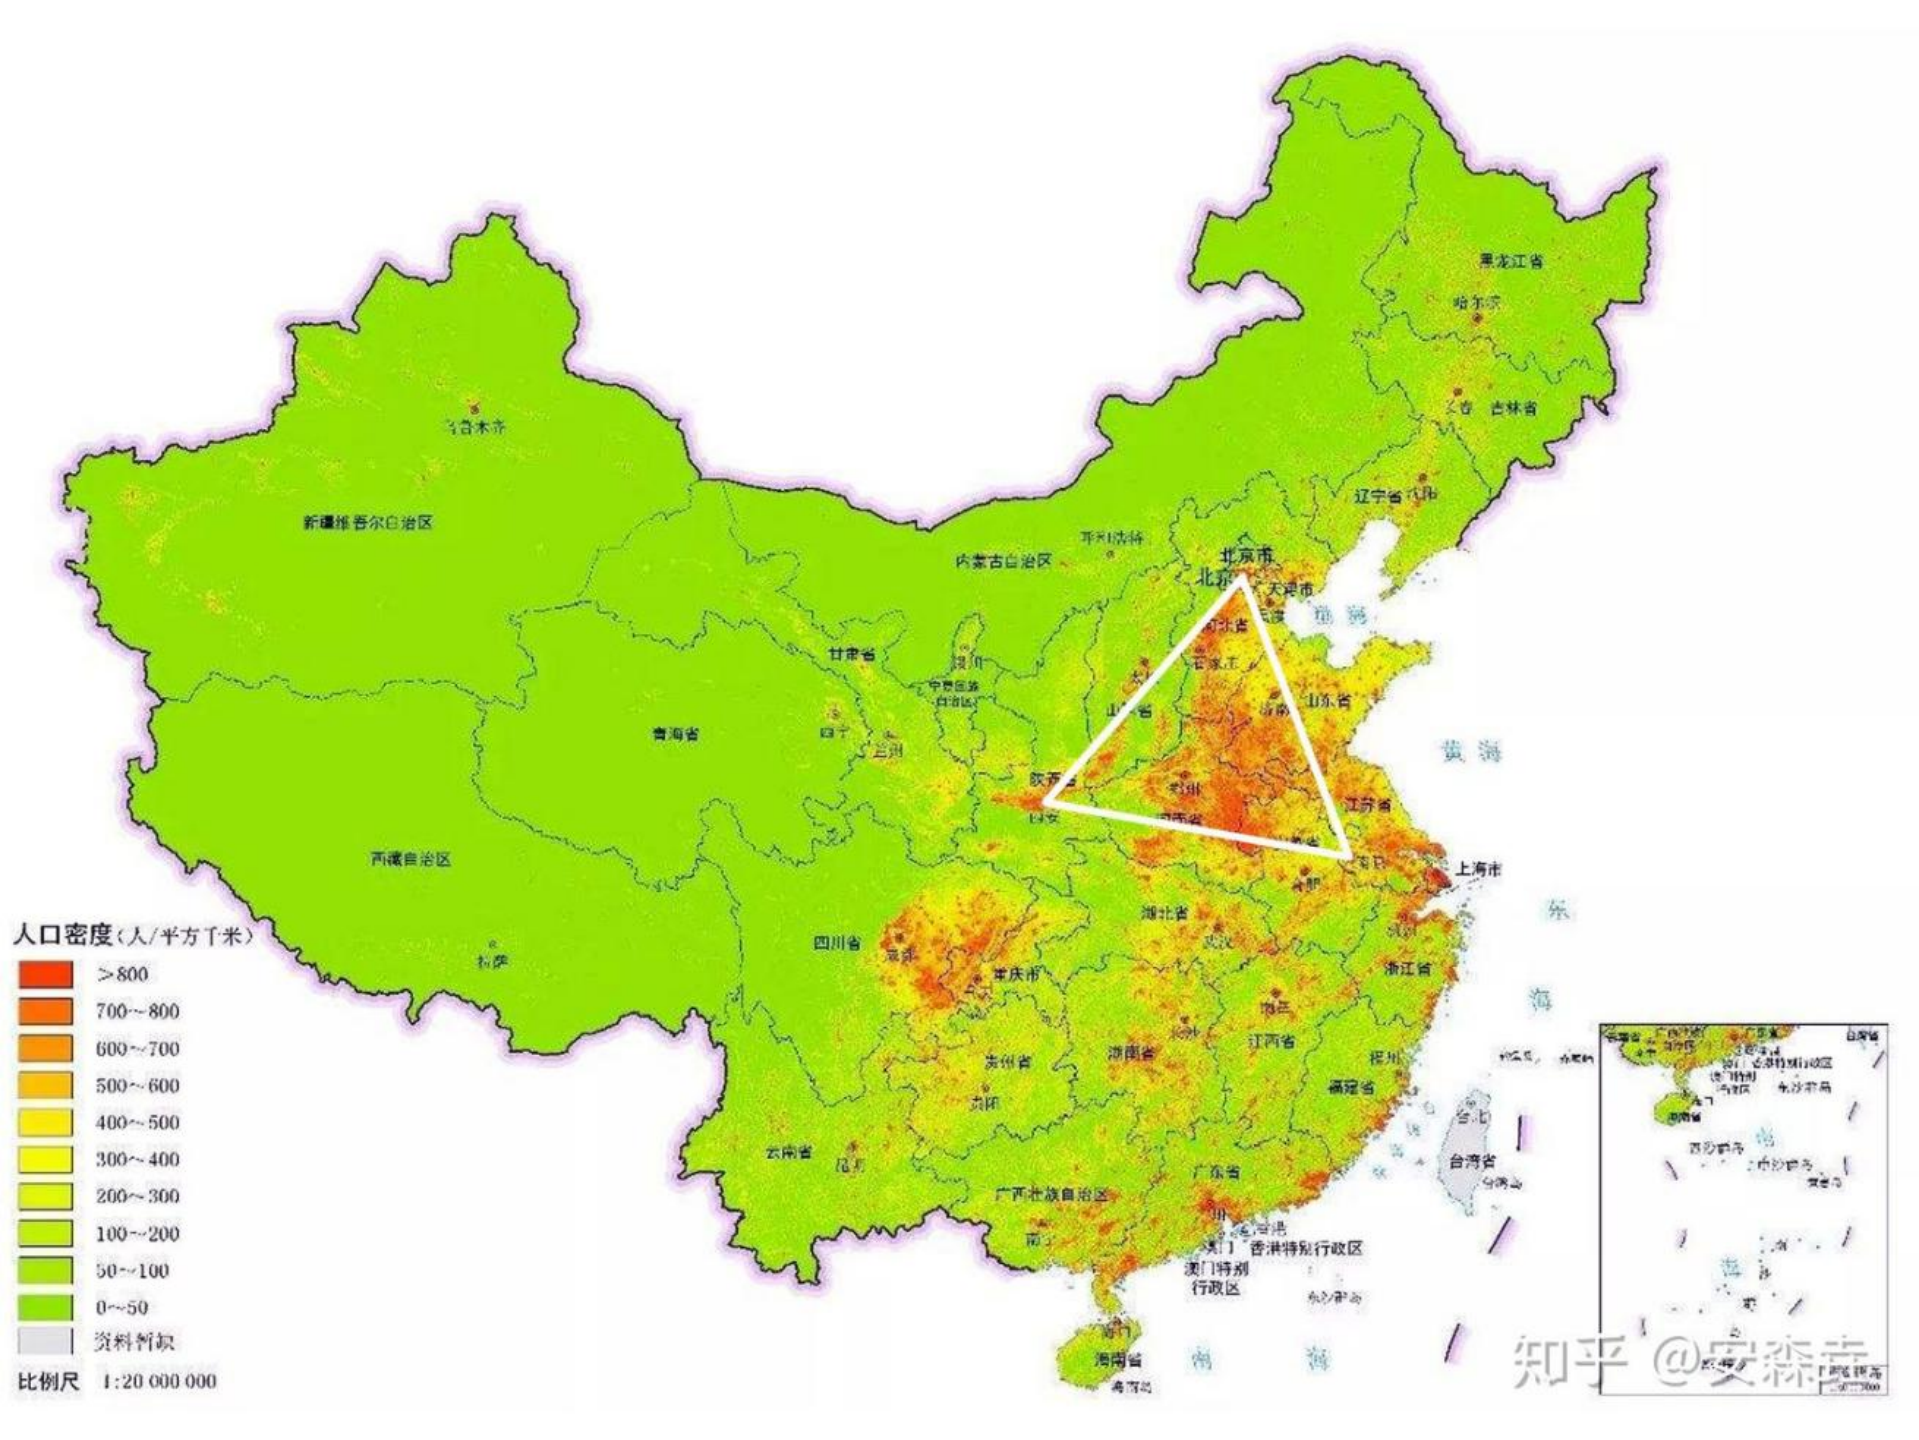 图 6:中国人口密度示意图